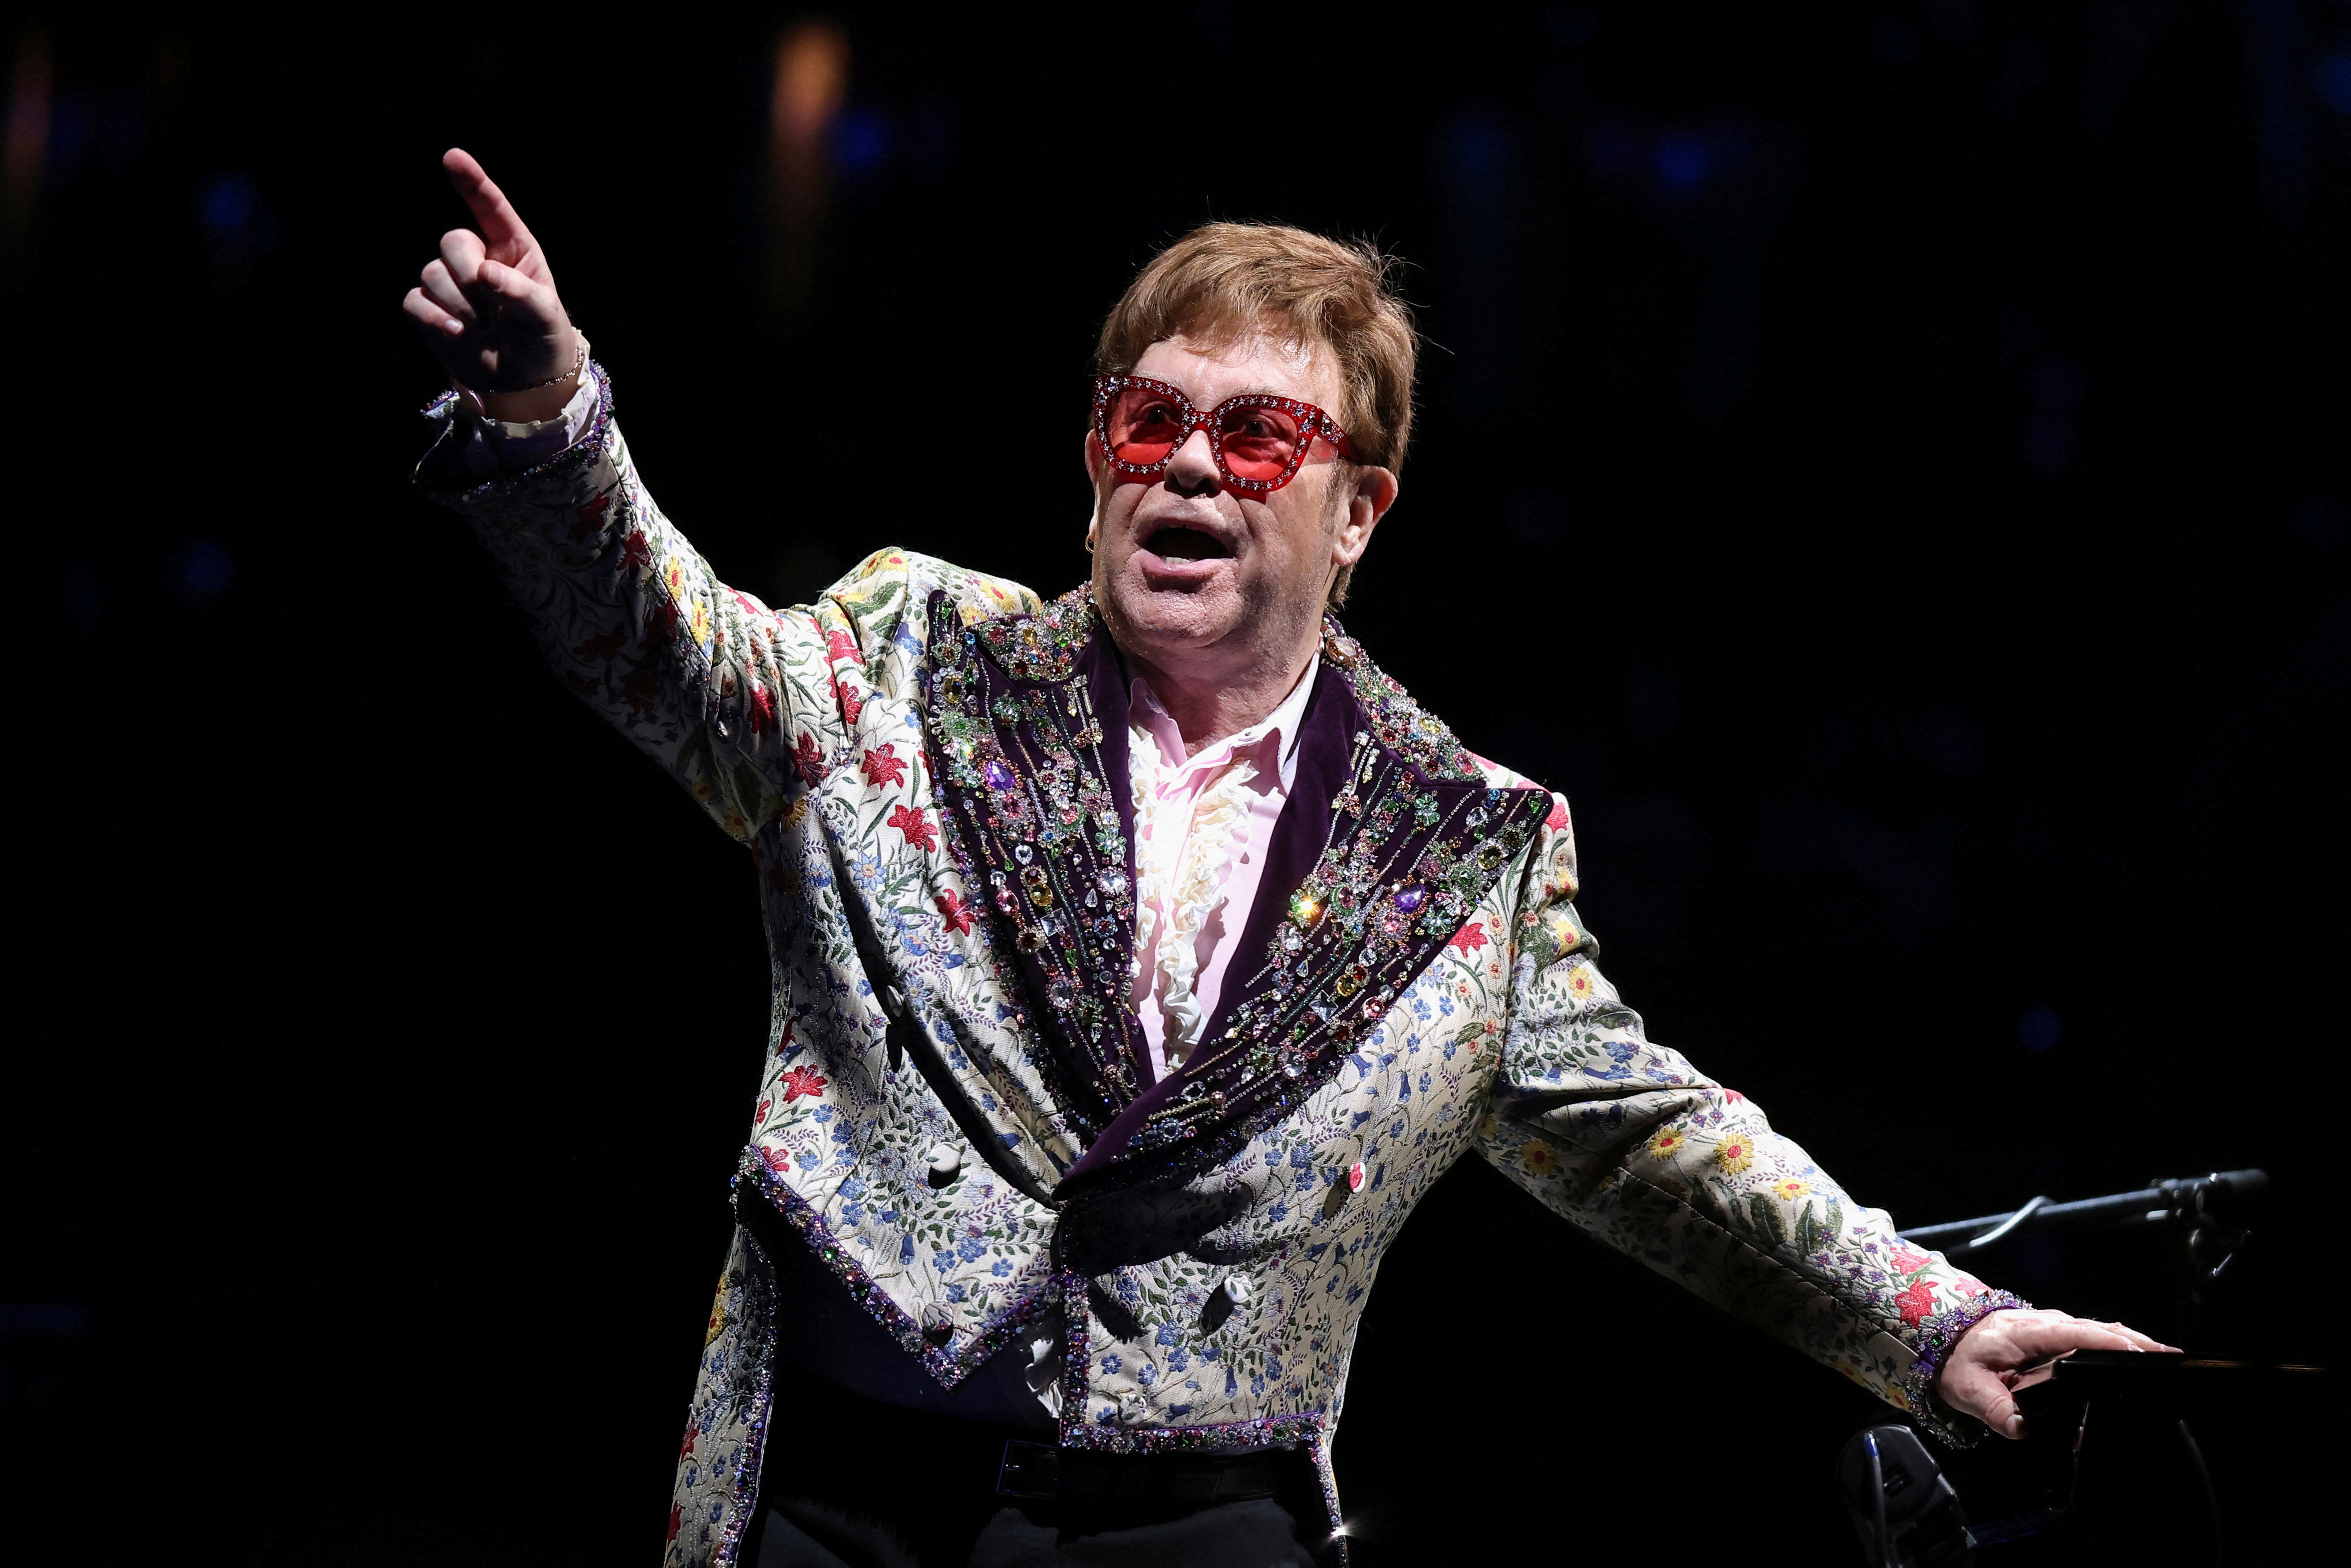 Elton John actúa mientras vuelve a completar su gira Farewell Yellow Brick Road Tour desde que se pospuso debido a las restricciones de la enfermedad del coronavirus (COVID-19) en 2020, en Nueva Orleans, Luisiana, Estados Unidos, el 19 de enero de 2022. REUTERS/Jonathan Bachman